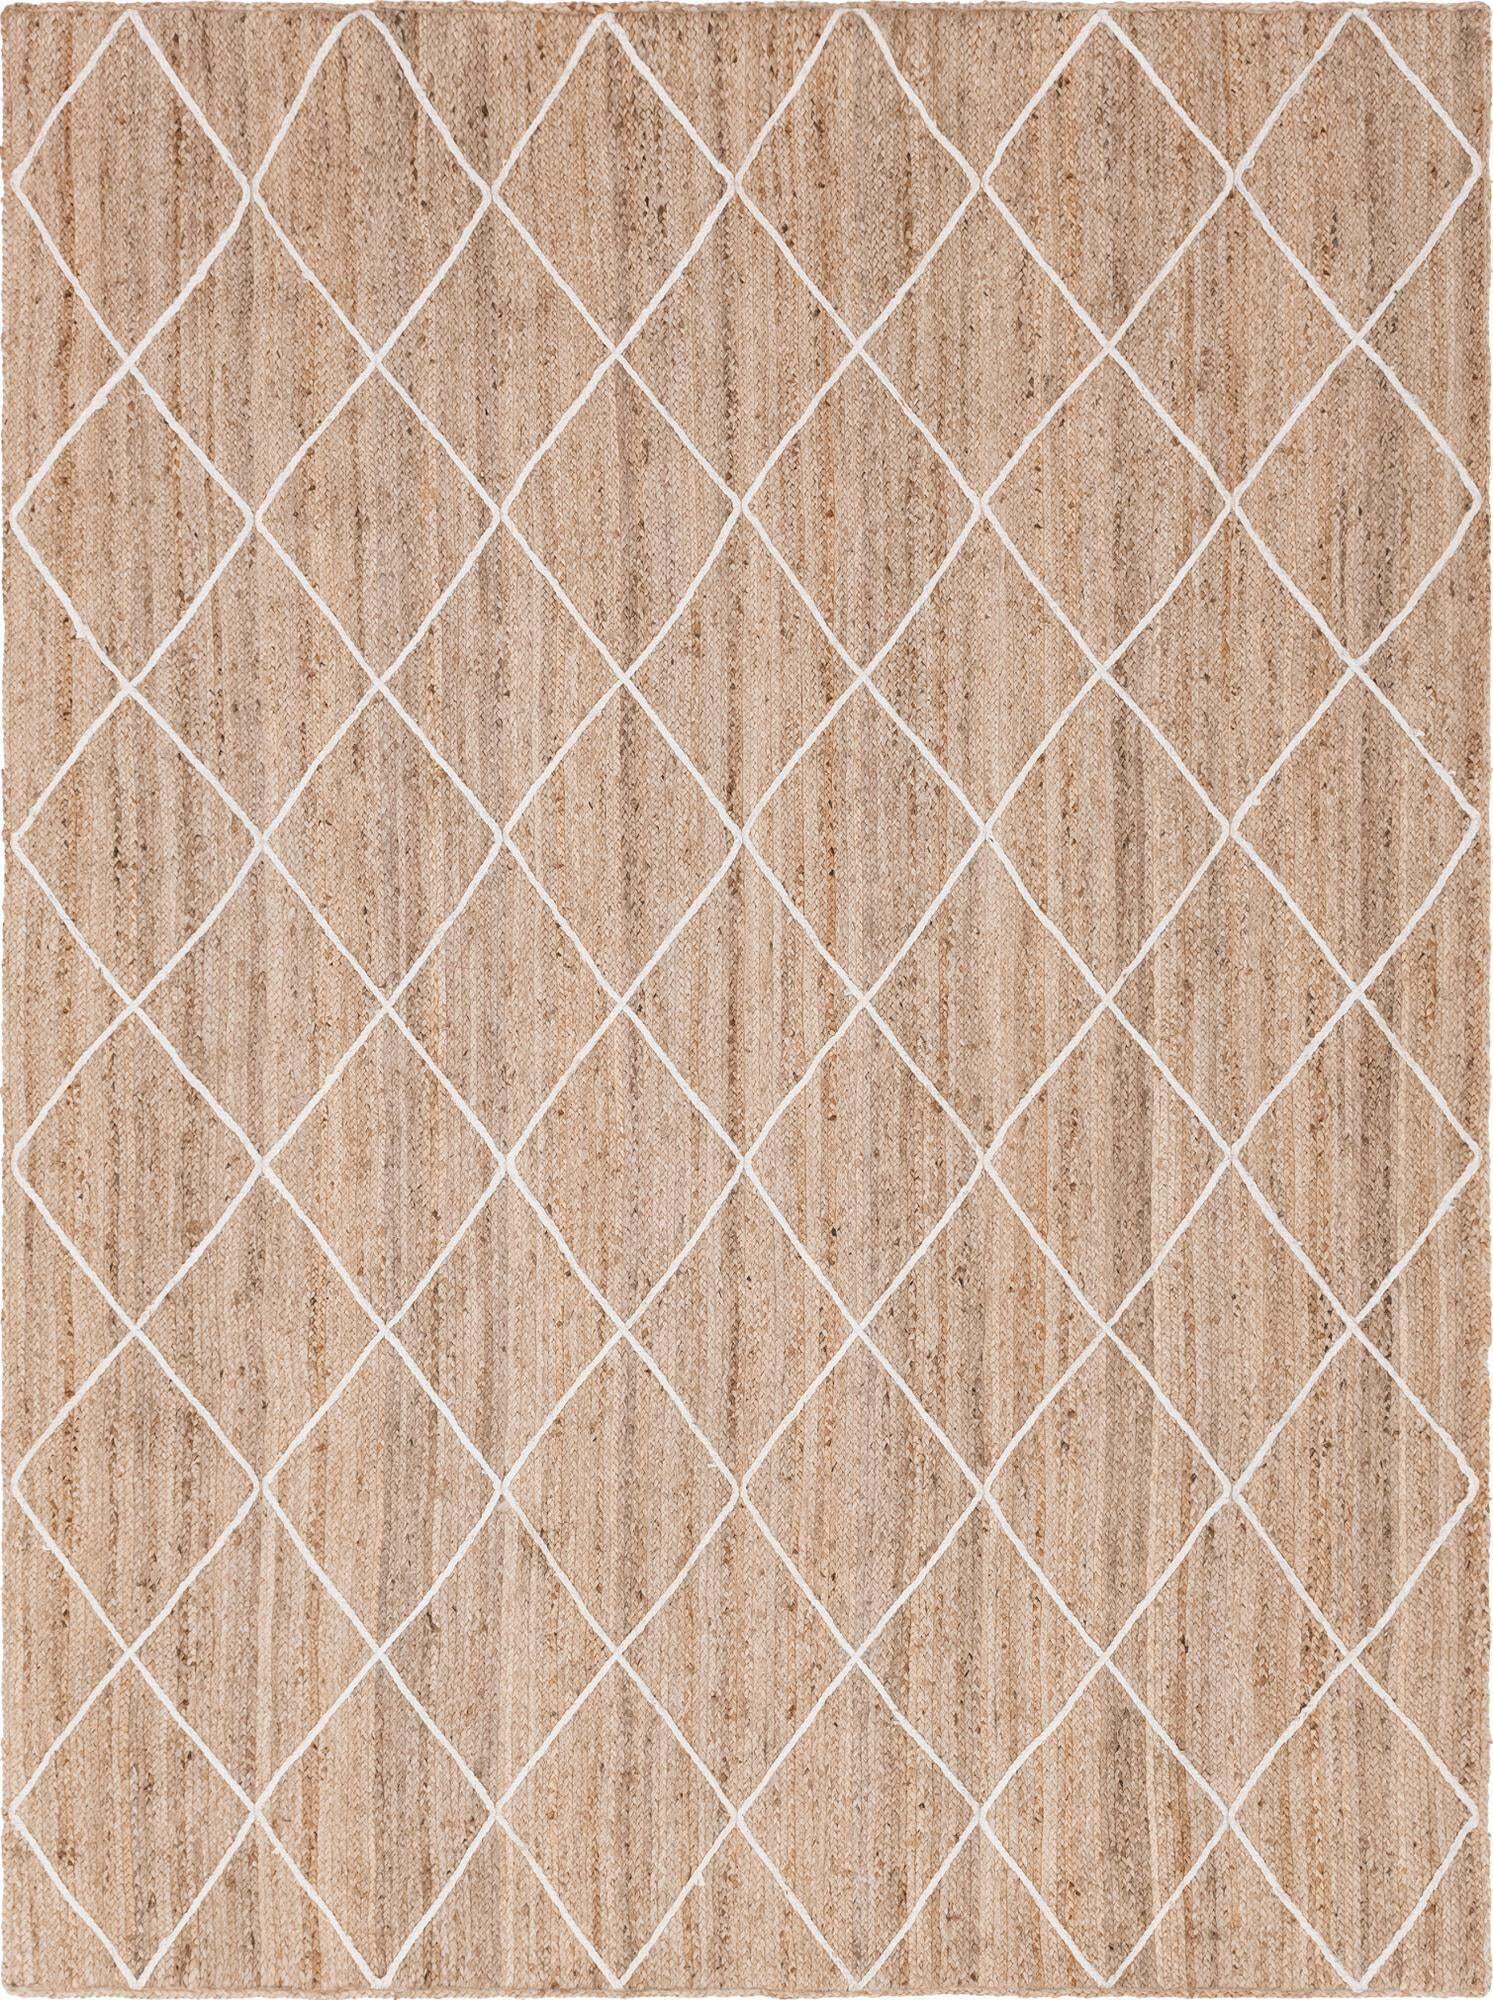 Unique Loom Indoor Rugs - Braided Jute Trellis Geometric Rectangular 9x12 Rug Natural & Ivory